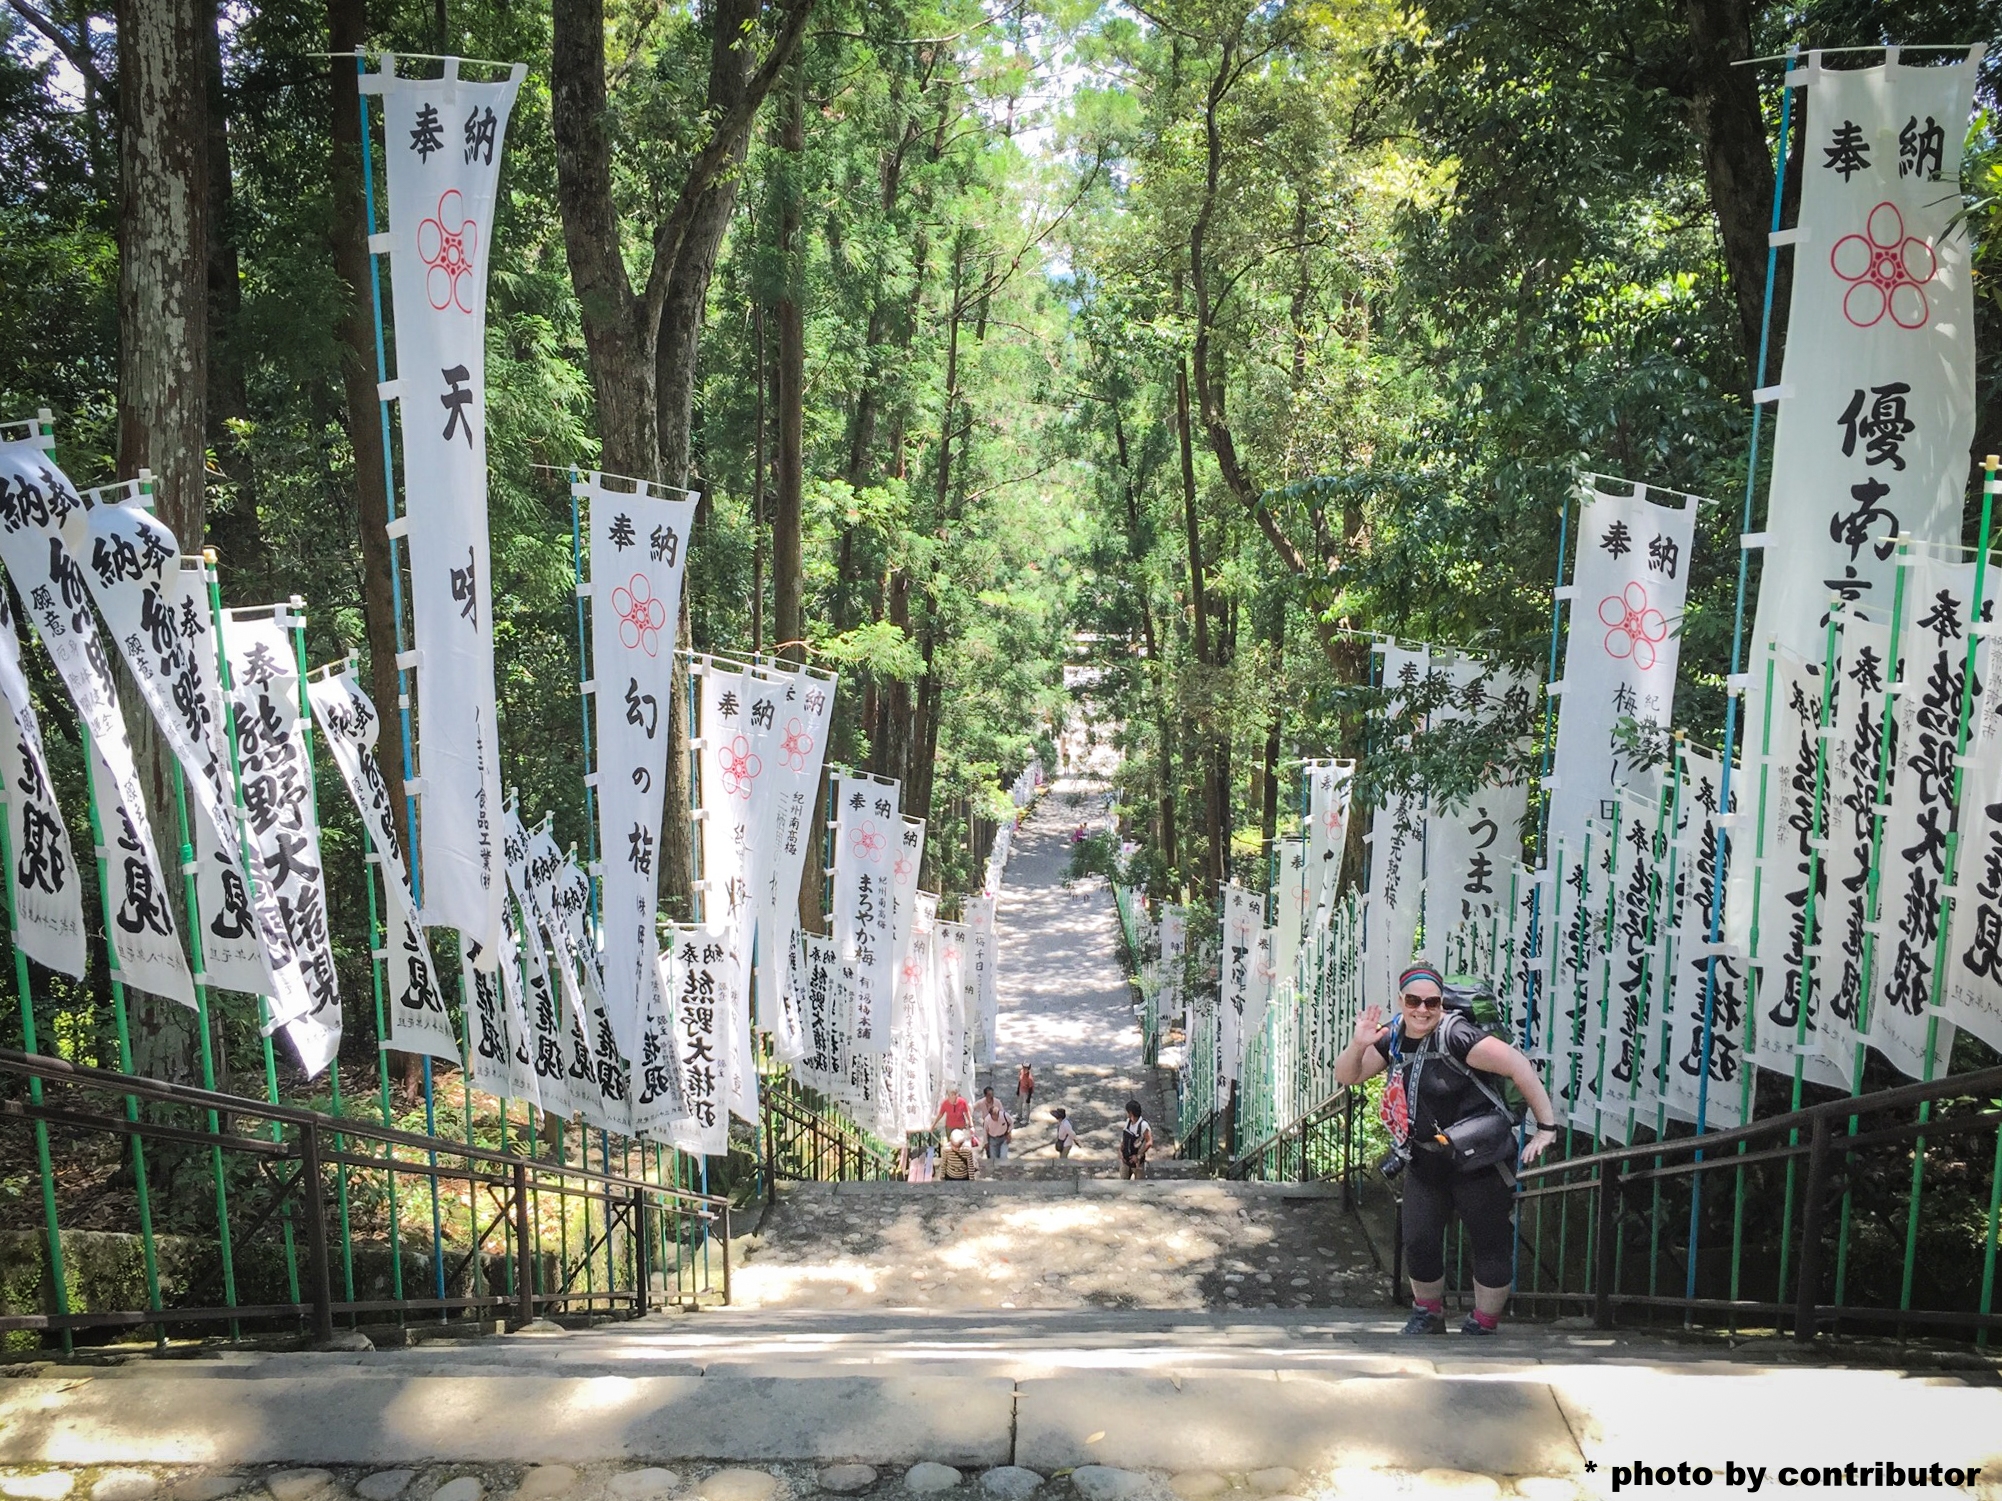 Steps leading up to the Hongu Taisha Shrine